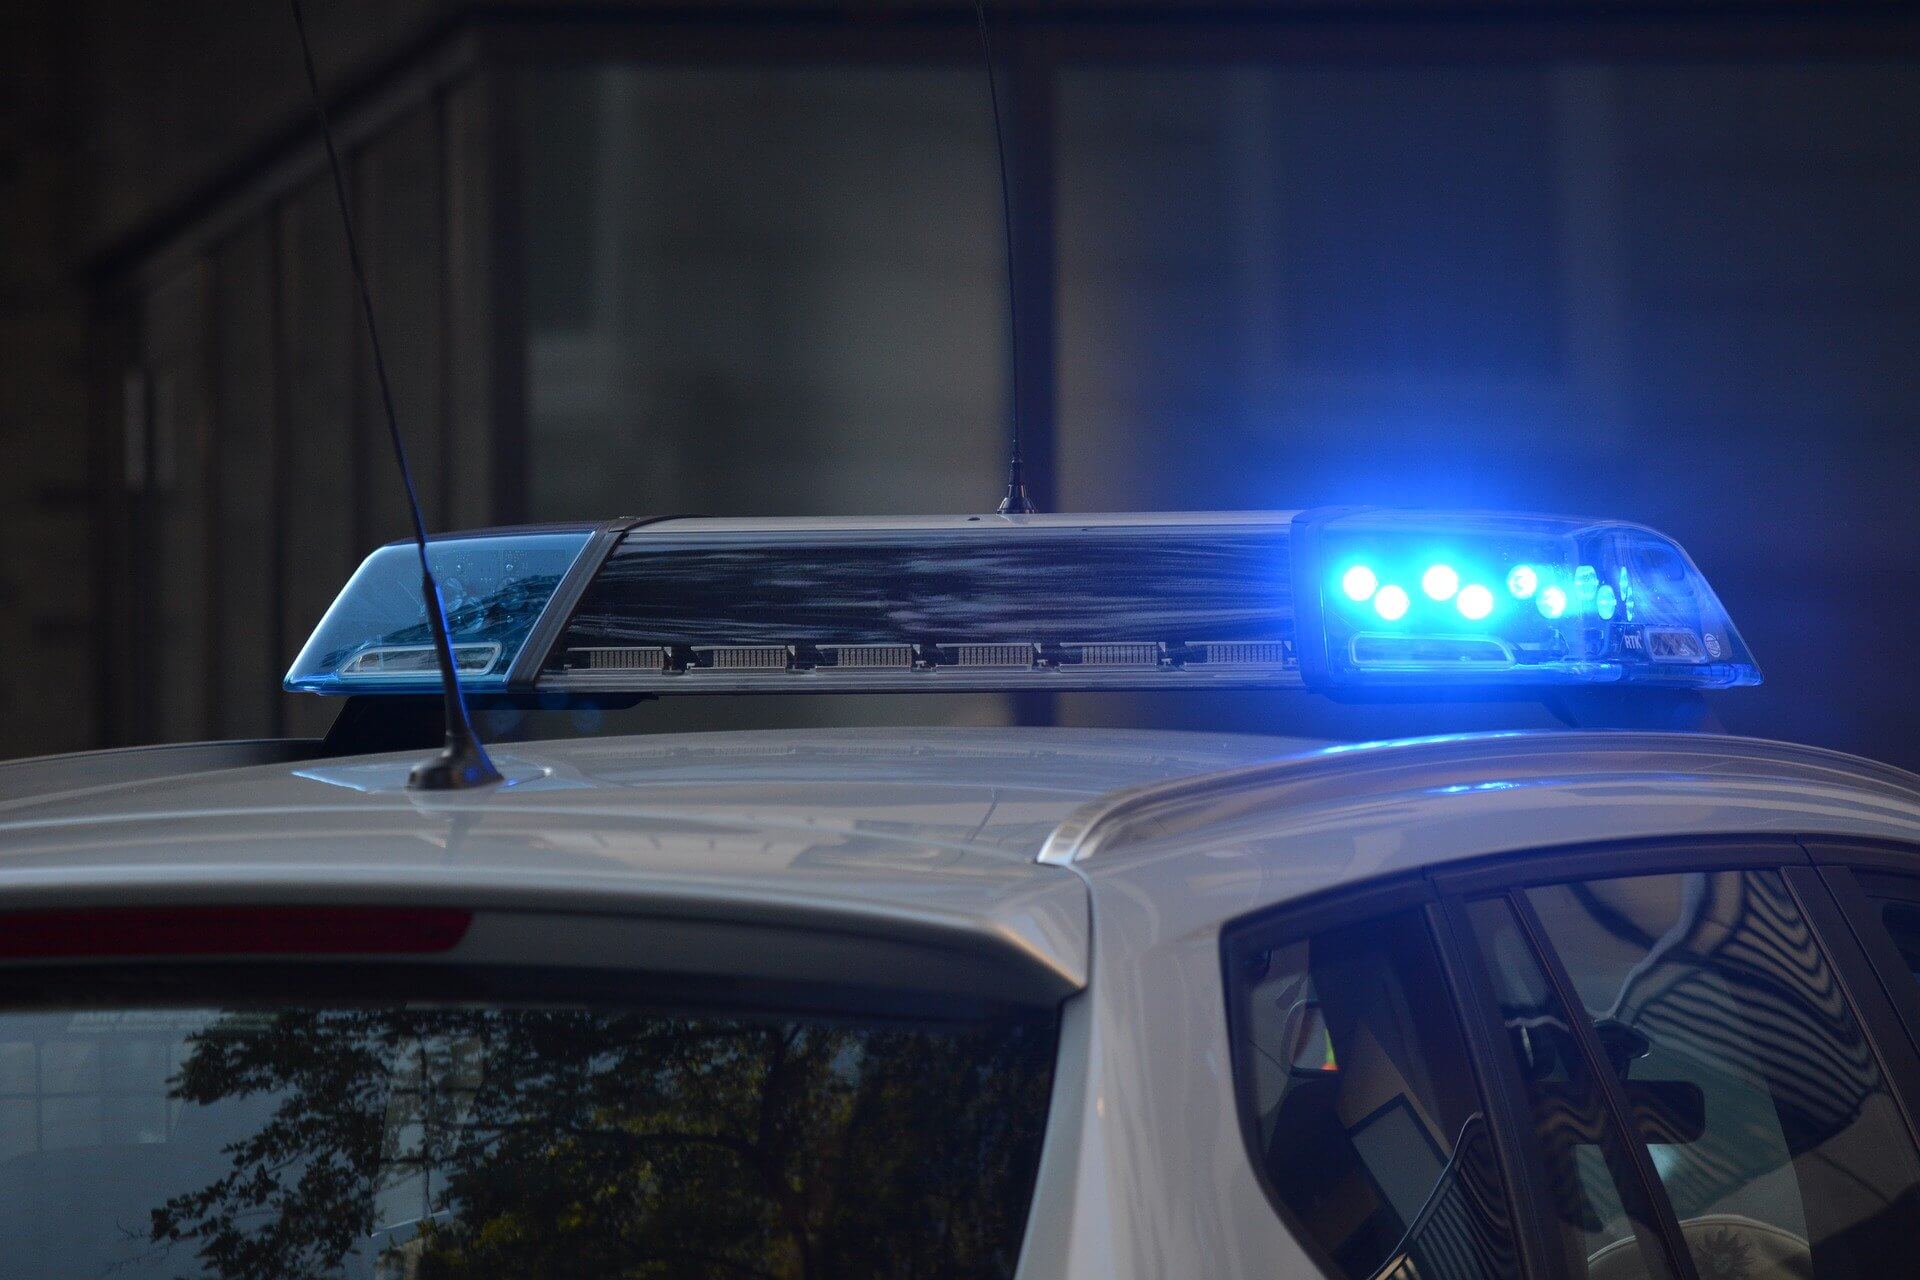 Blaulicht eines Polizeiautos